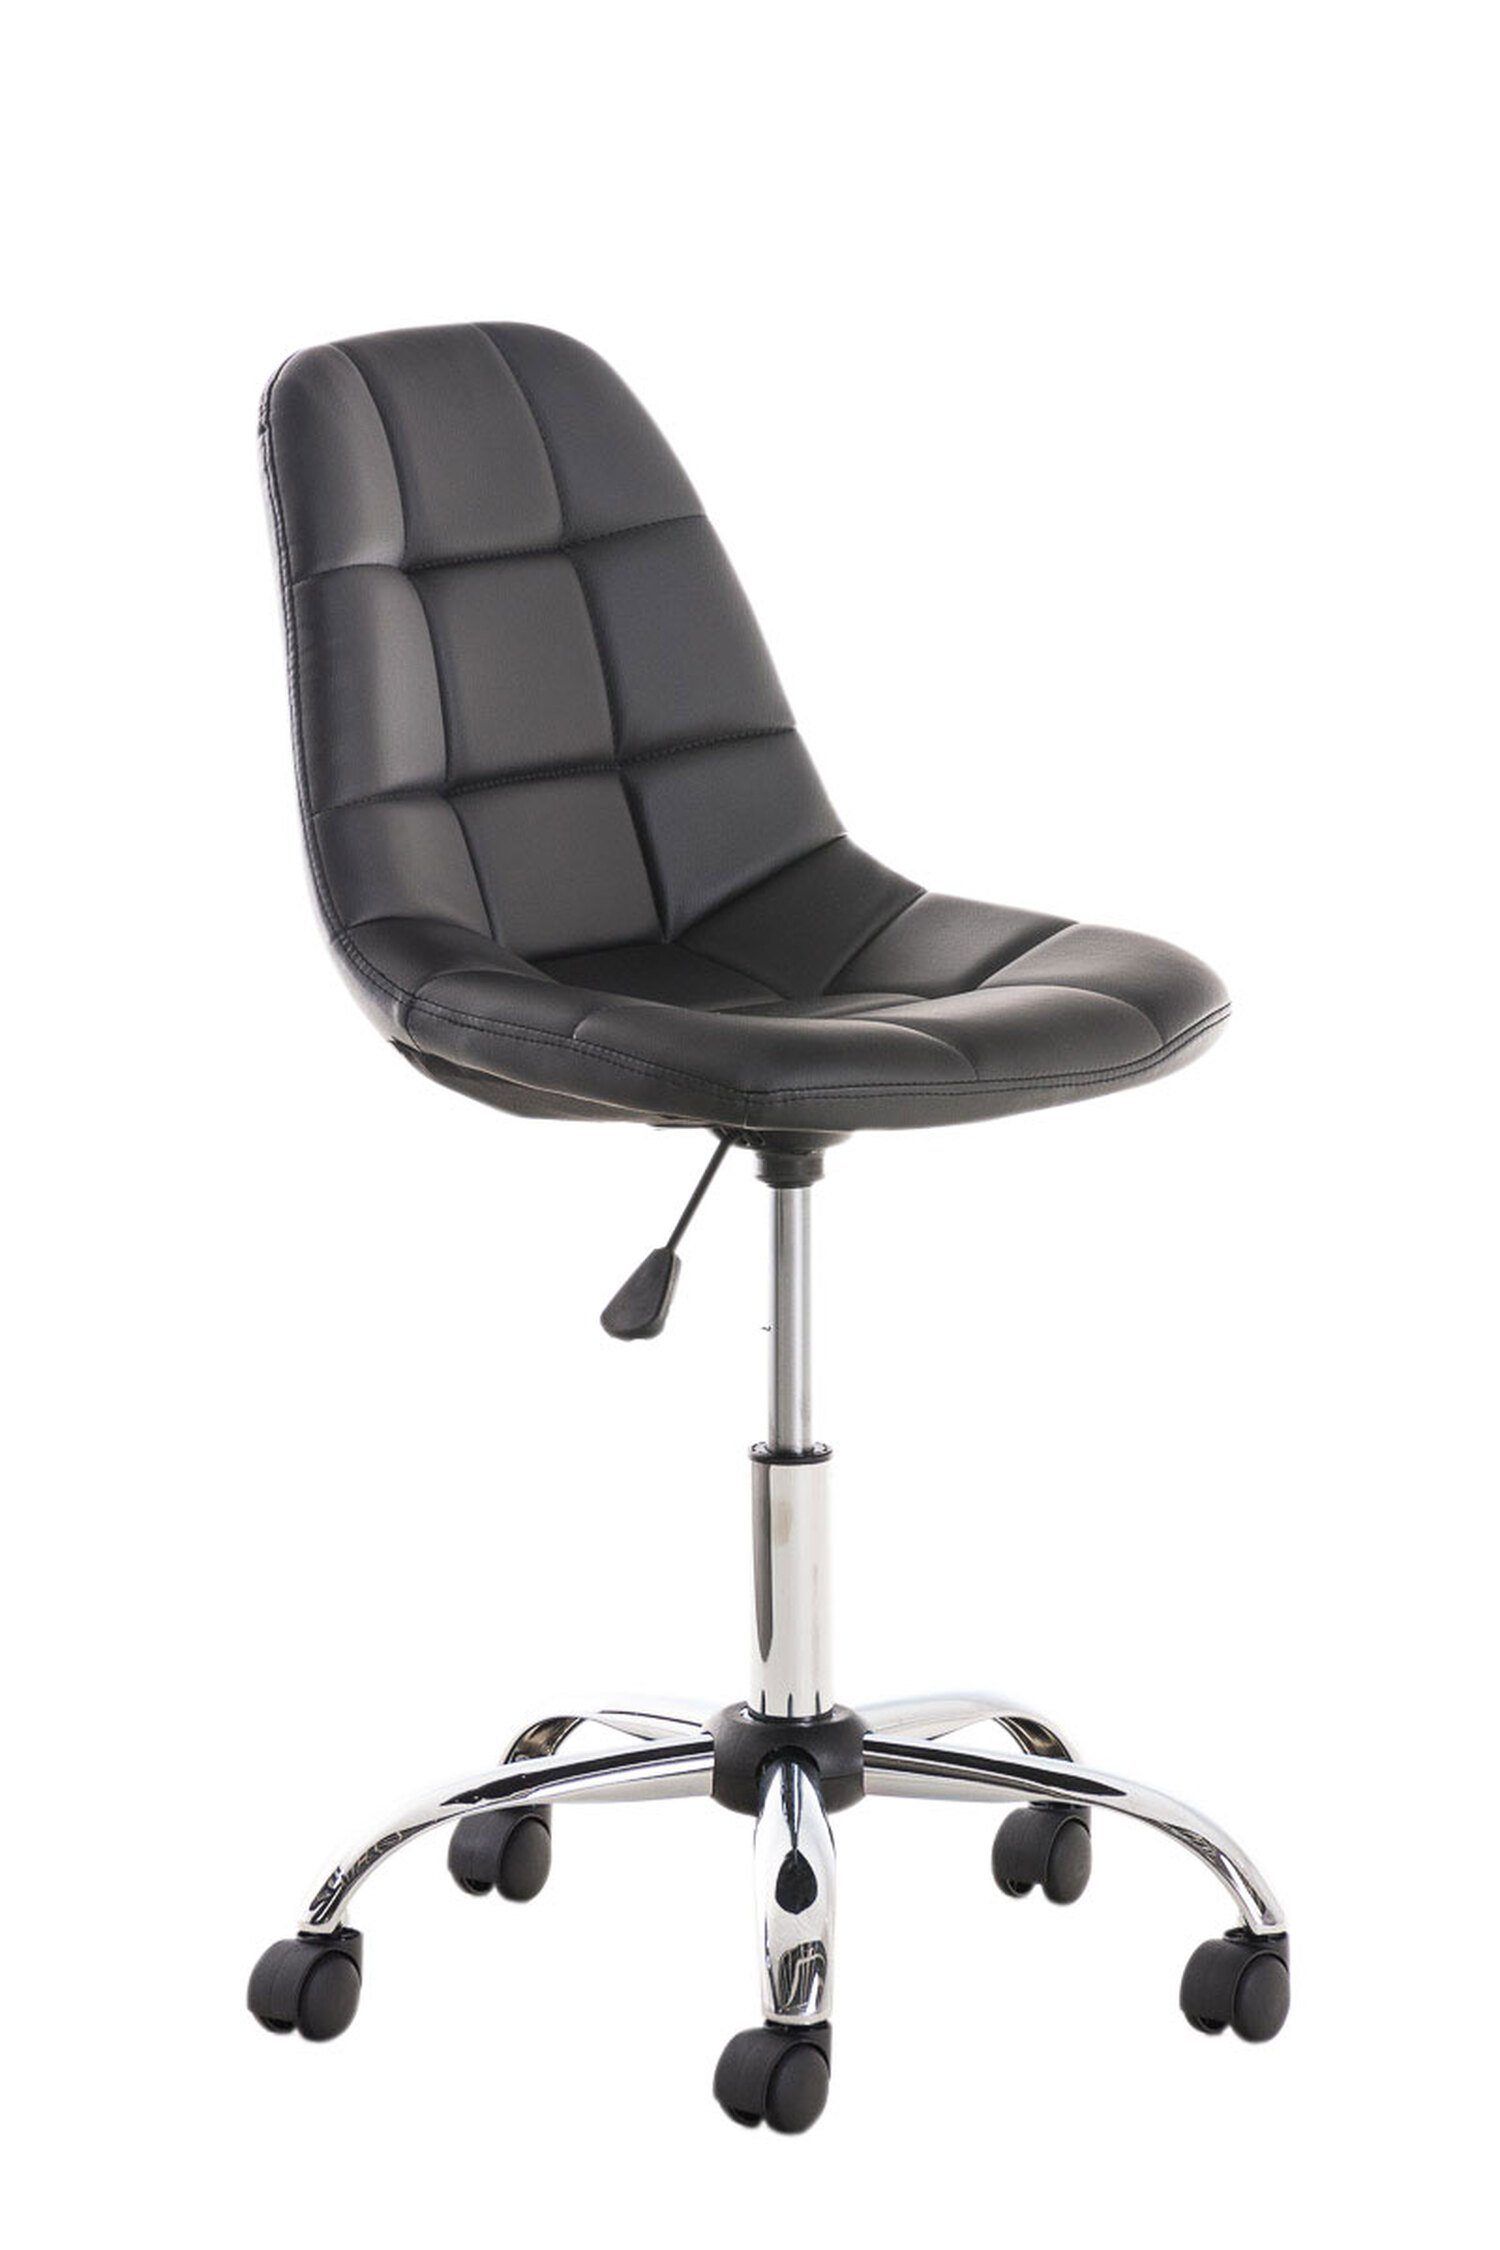 TPFLiving Bürostuhl Emily mit bequemer Rückenlehne - höhenverstellbar und 360° drehbar (Schreibtischstuhl, Drehstuhl, Chefsessel, Konferenzstuhl), Gestell: Metall chrom - Sitzfläche: Kunstleder schwarz